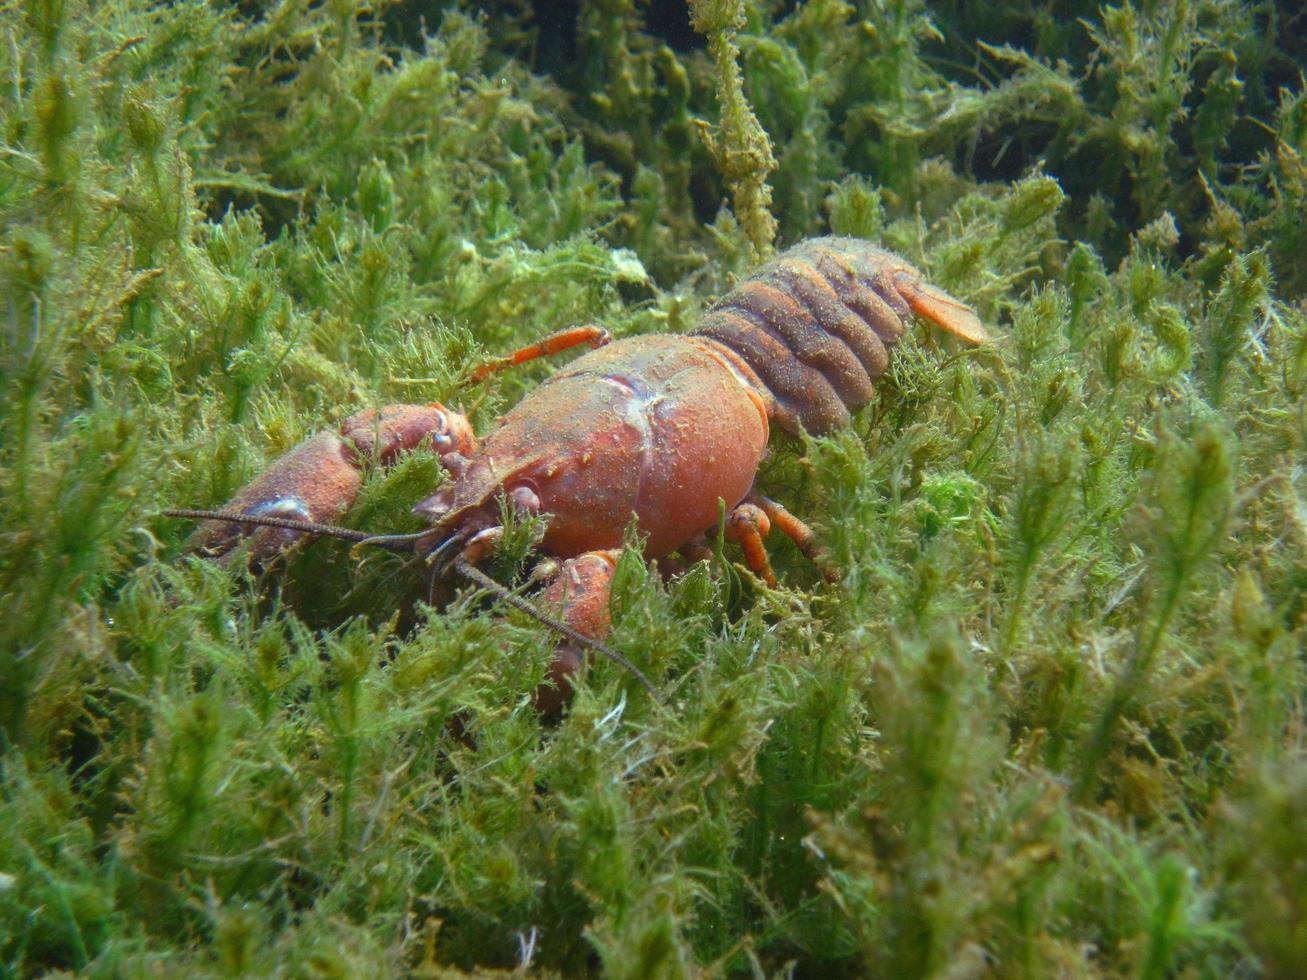 gran cangrejo rojo en la hierba marina en verano foto